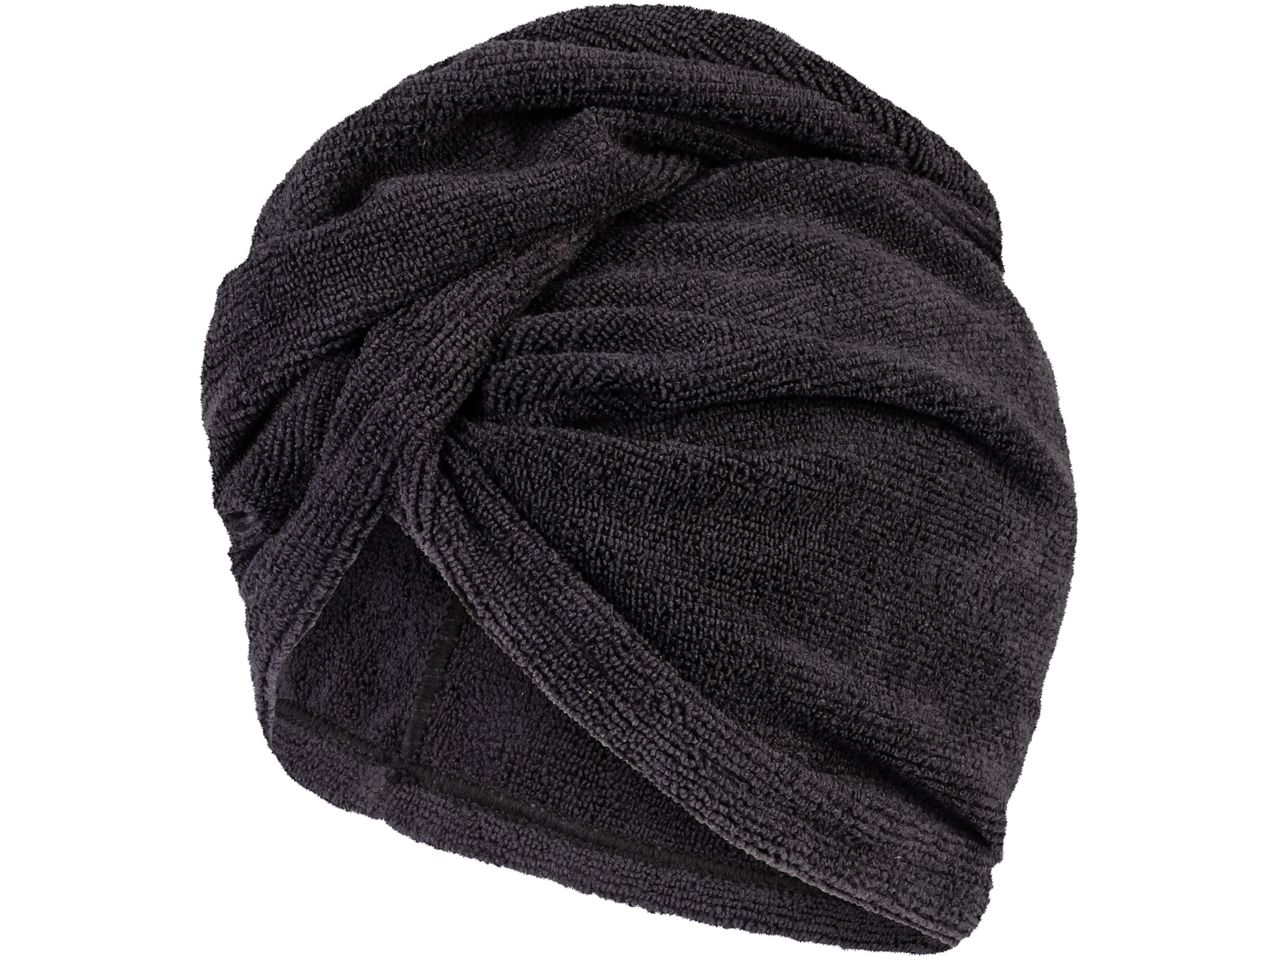 Asciugamano a turbante , prezzo 2.99 EUR 
Asciugamano a turbante 
- In microfibra, ...